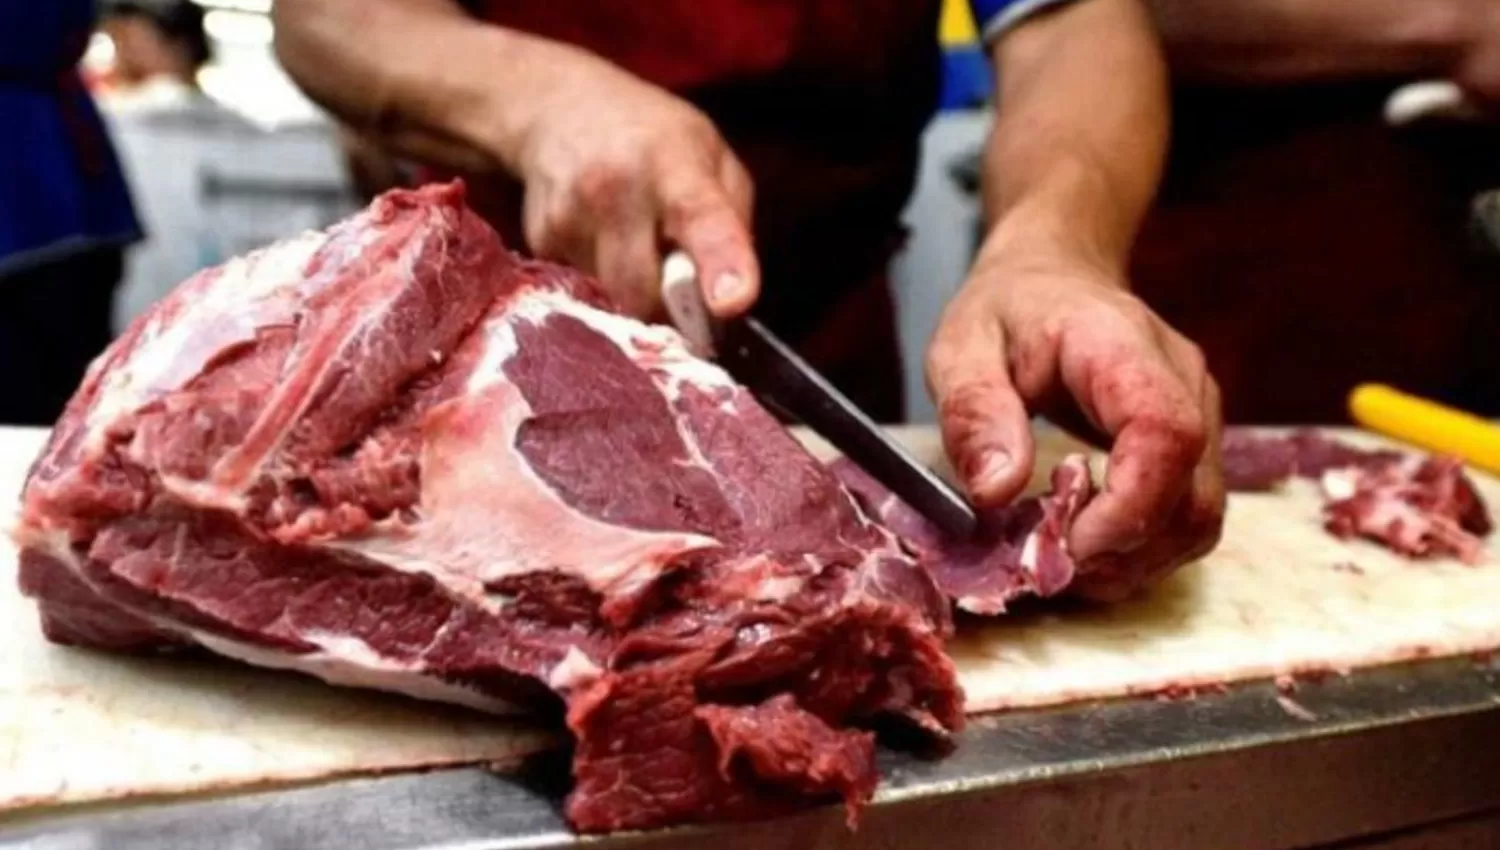 PRECIO QUE PREOCUPA. La carne alcanzó valores altos en los últimos meses. FOTO TOMADA DE HOYDIA.COM.AR